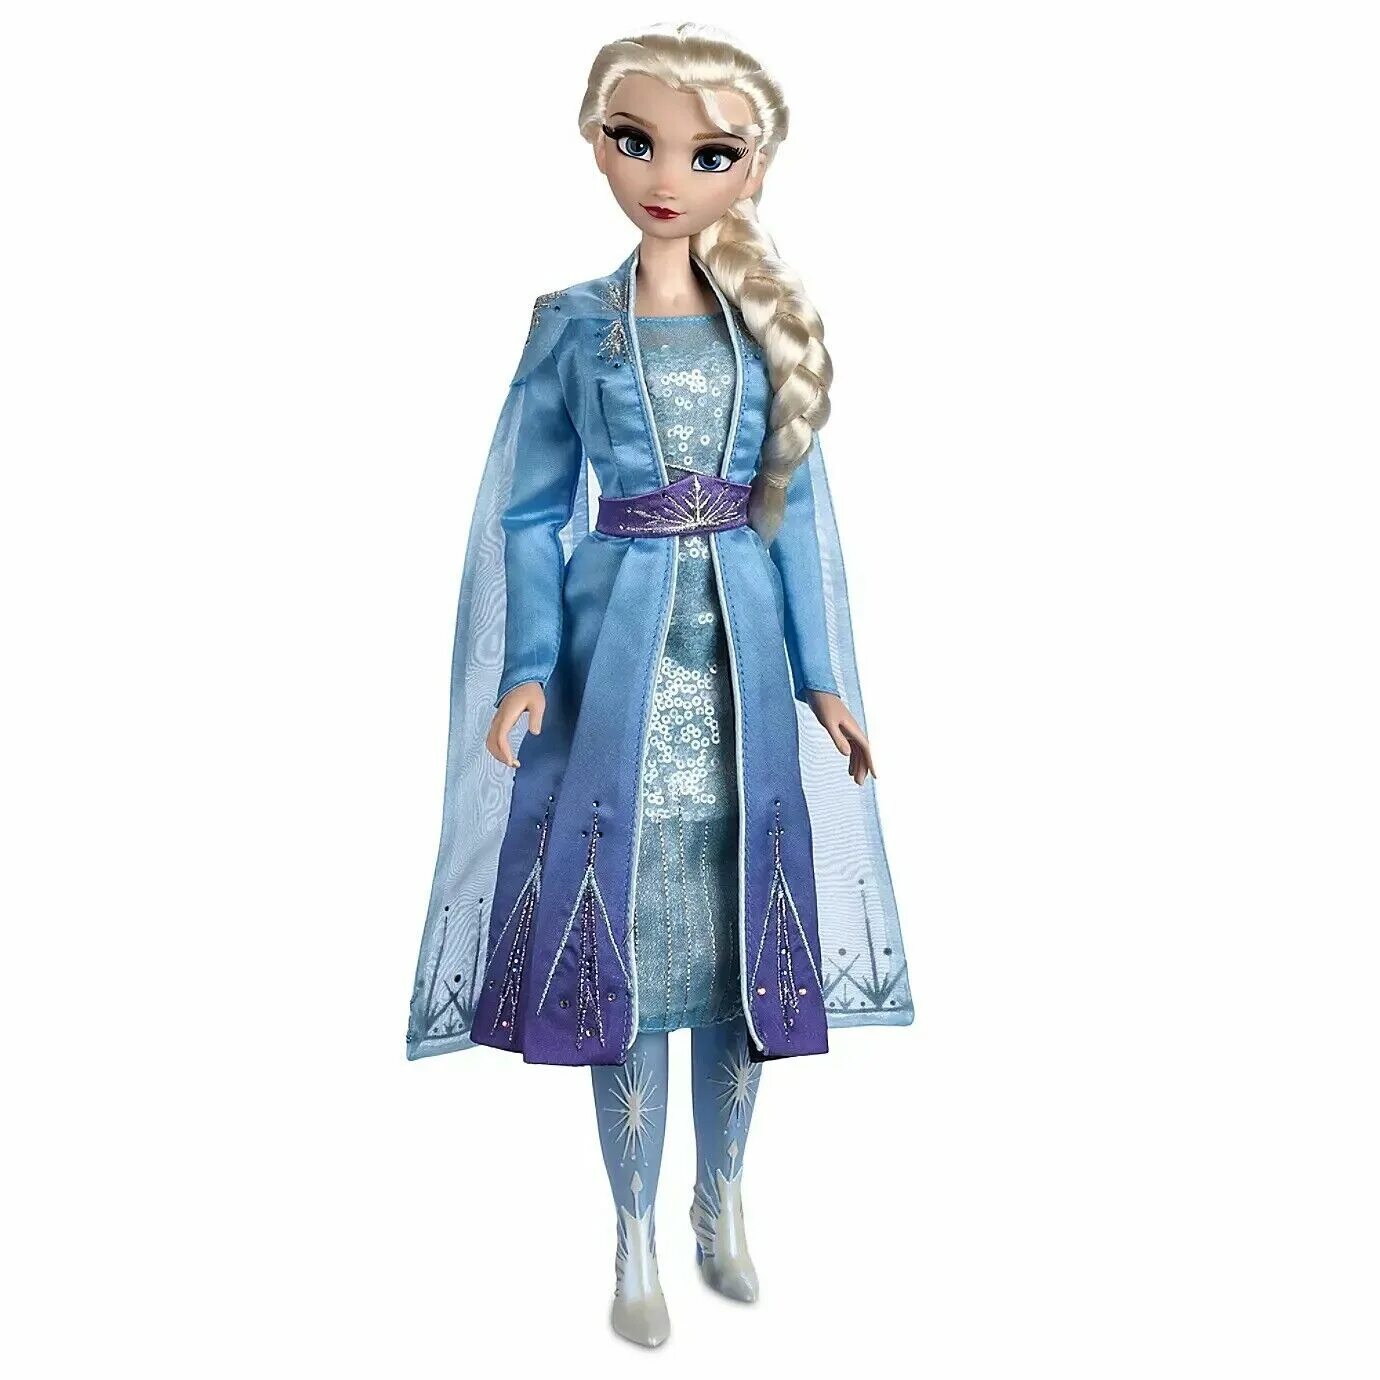 Куклы Дисней принцессы лимитированная Elsa 17. Elsa Snow Queen Frozen 2 кукла.